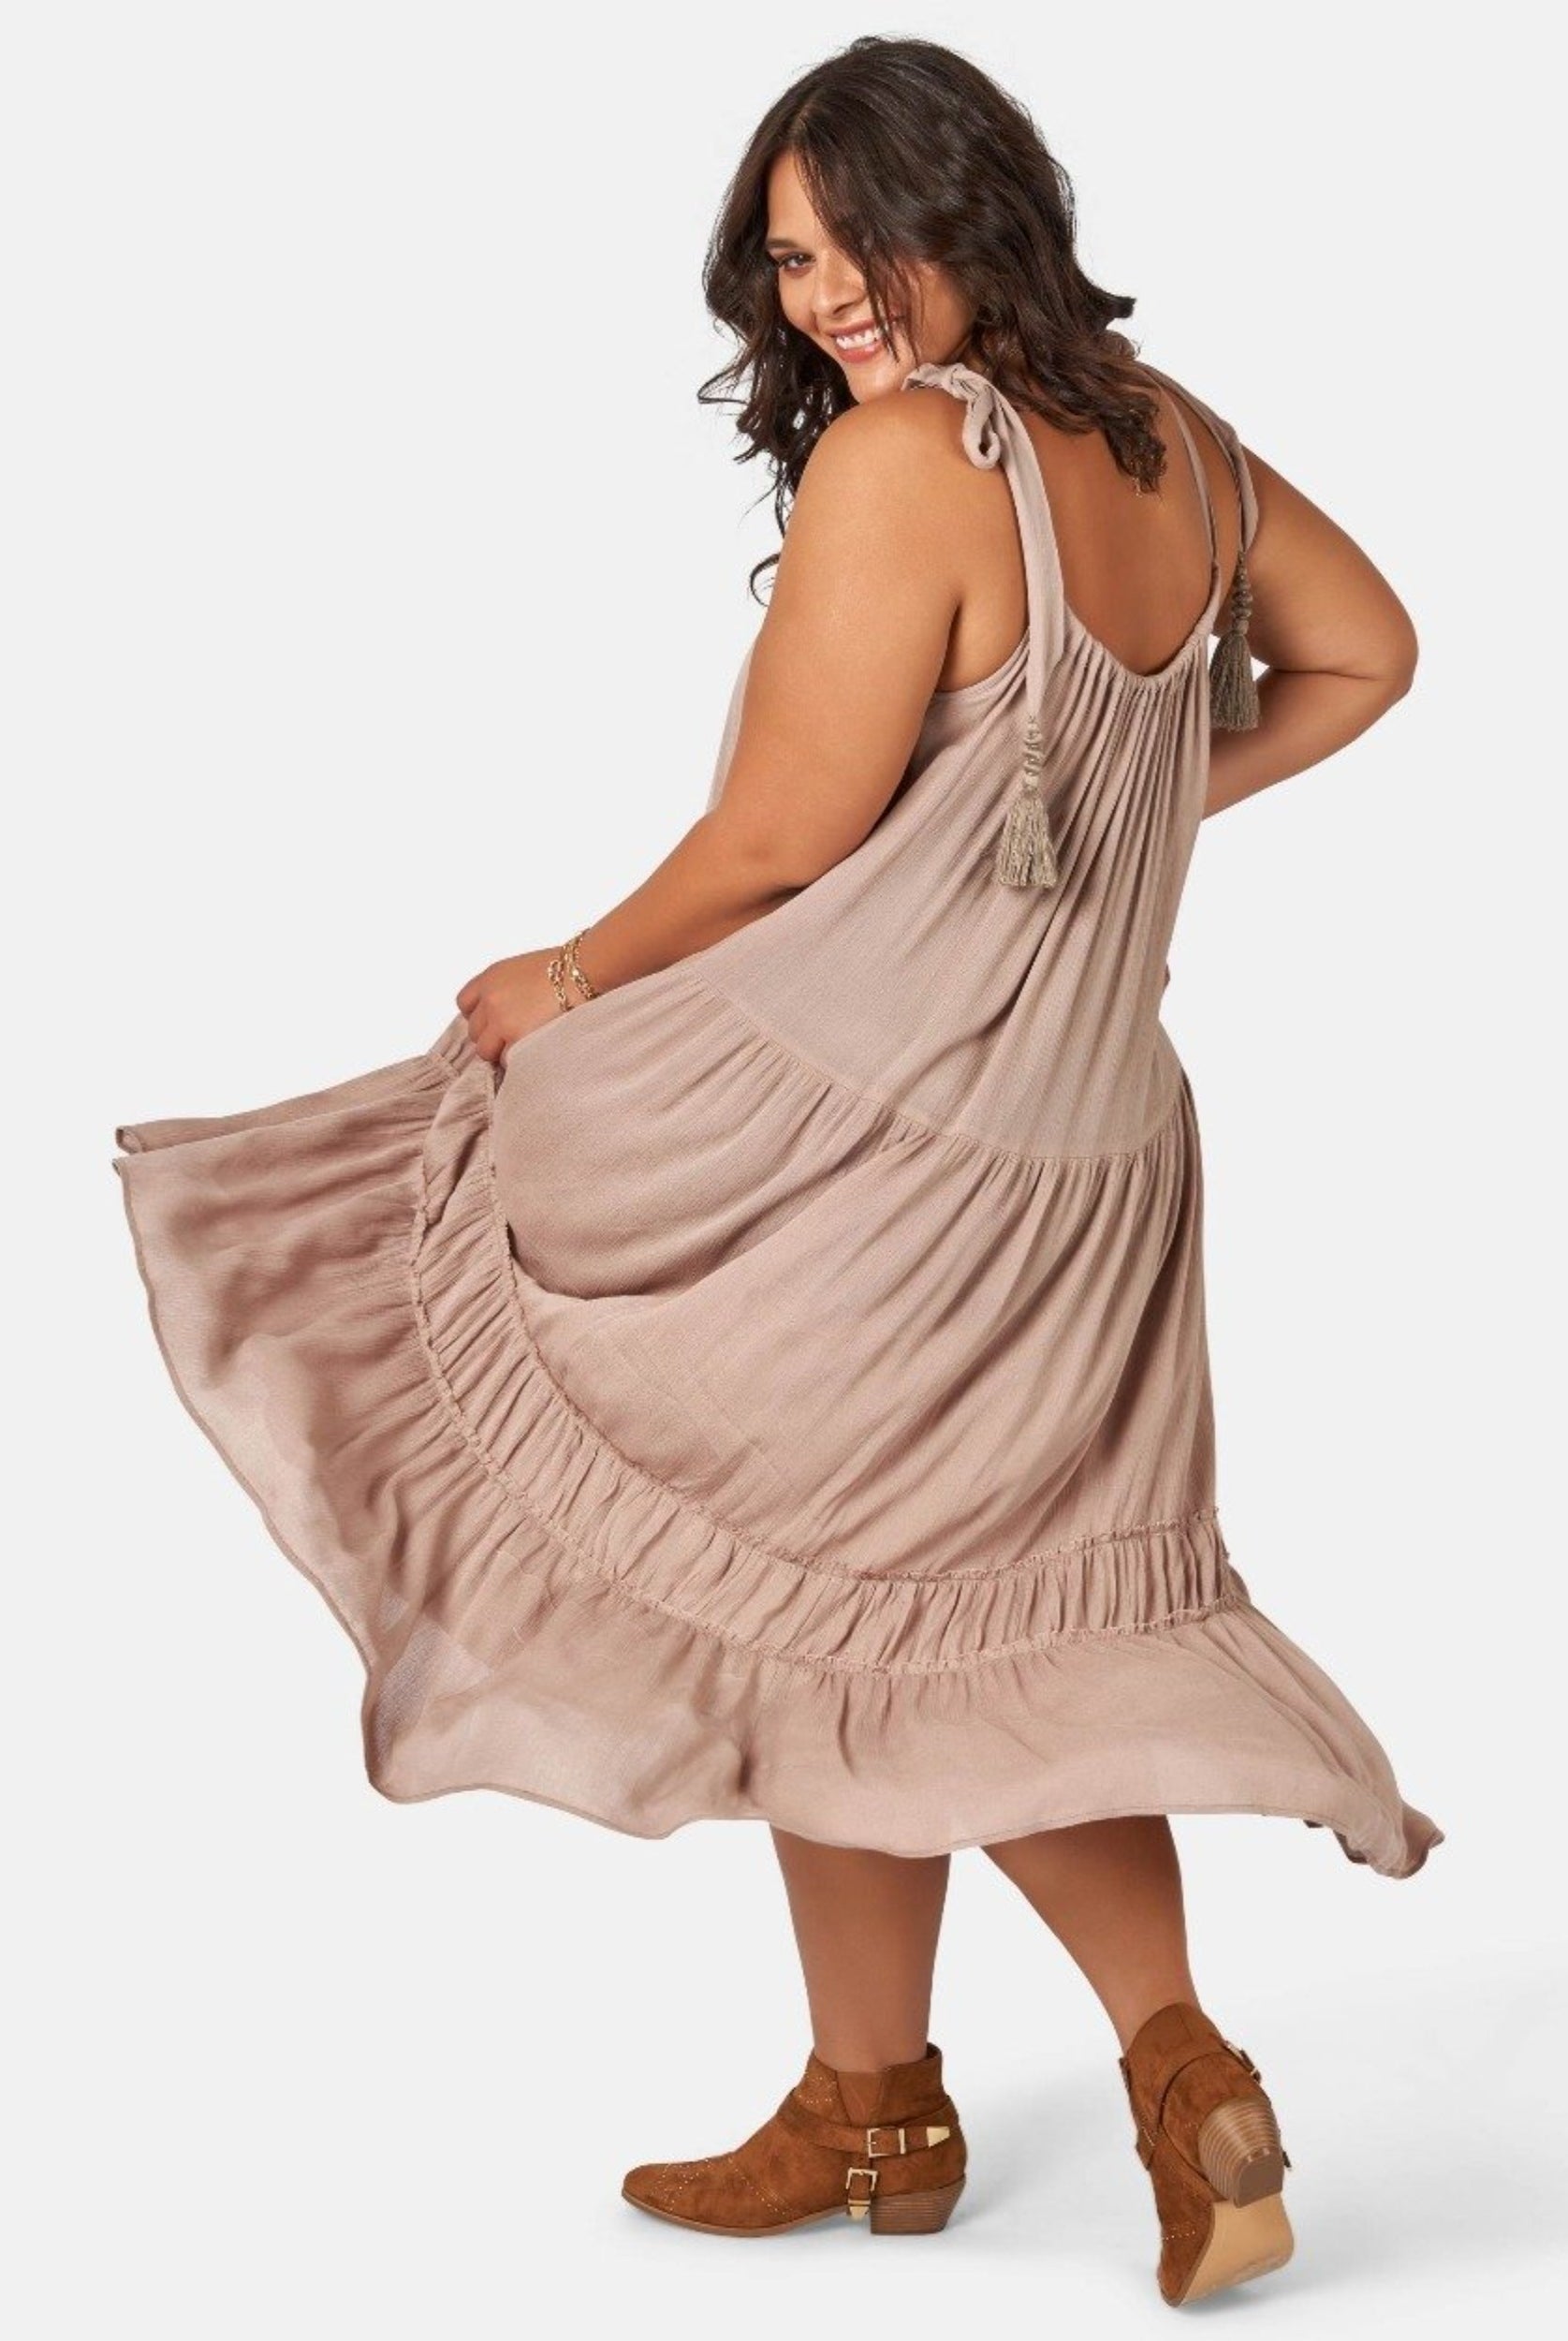 Model wearing nude maxi dress with asymmetric hemline